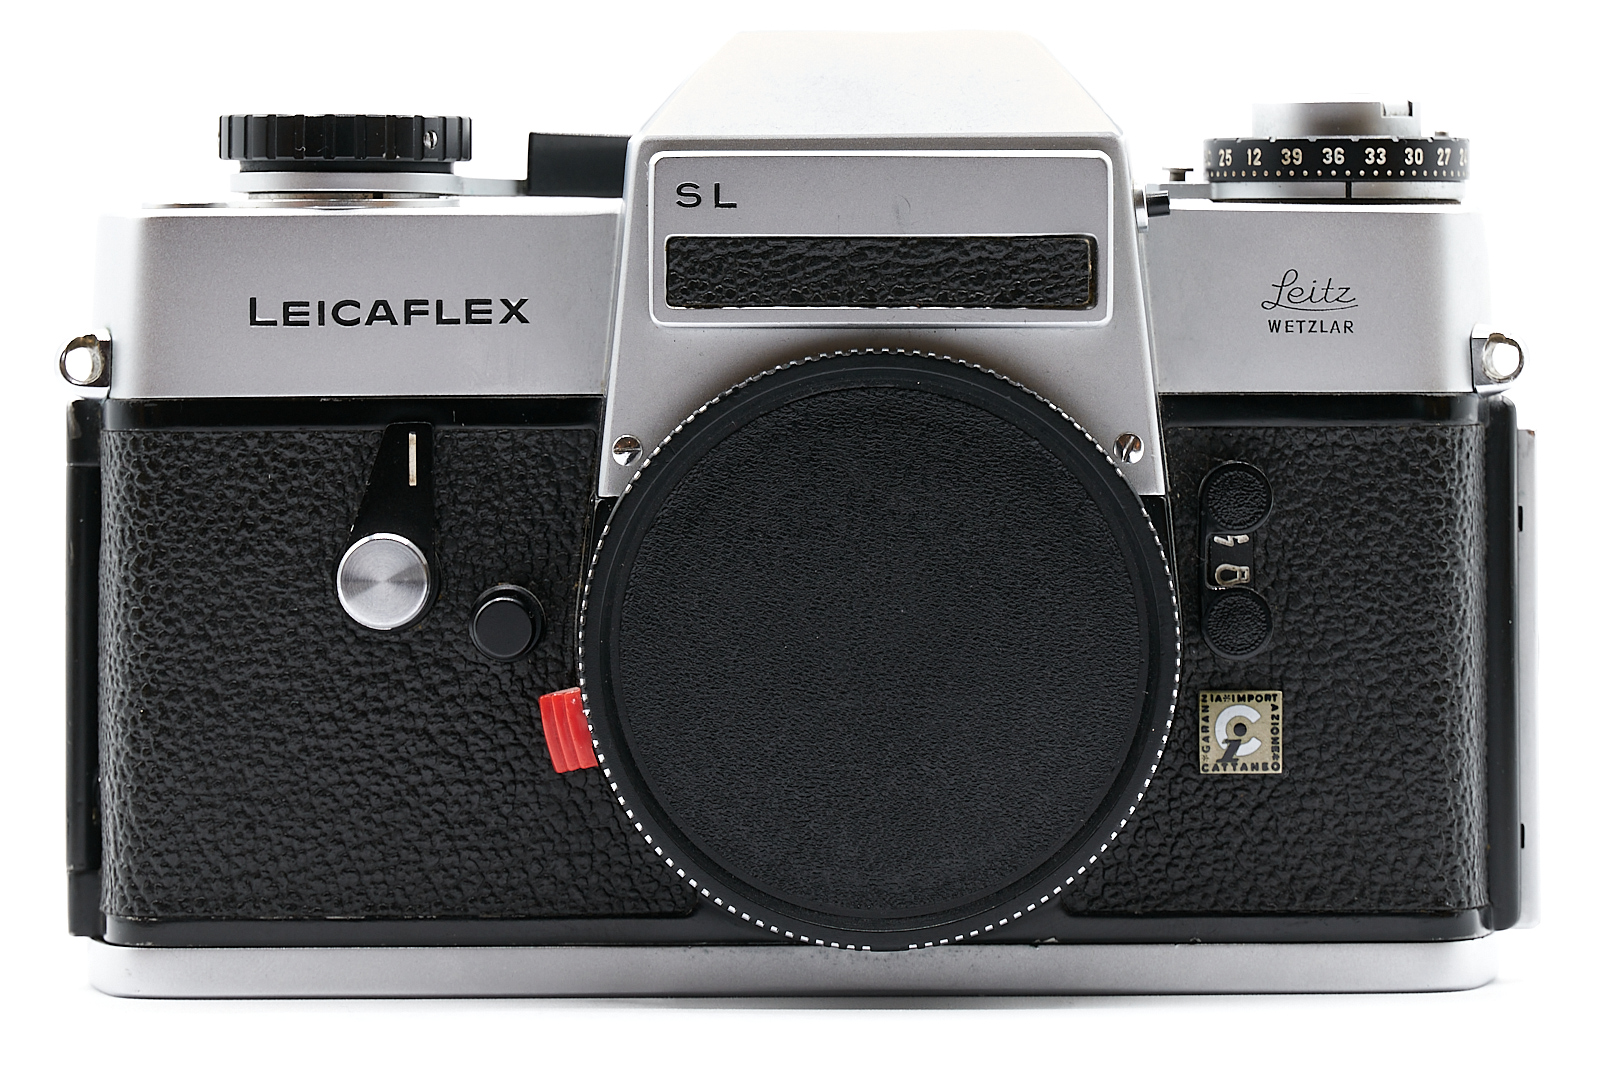 Leicaflex SL silver